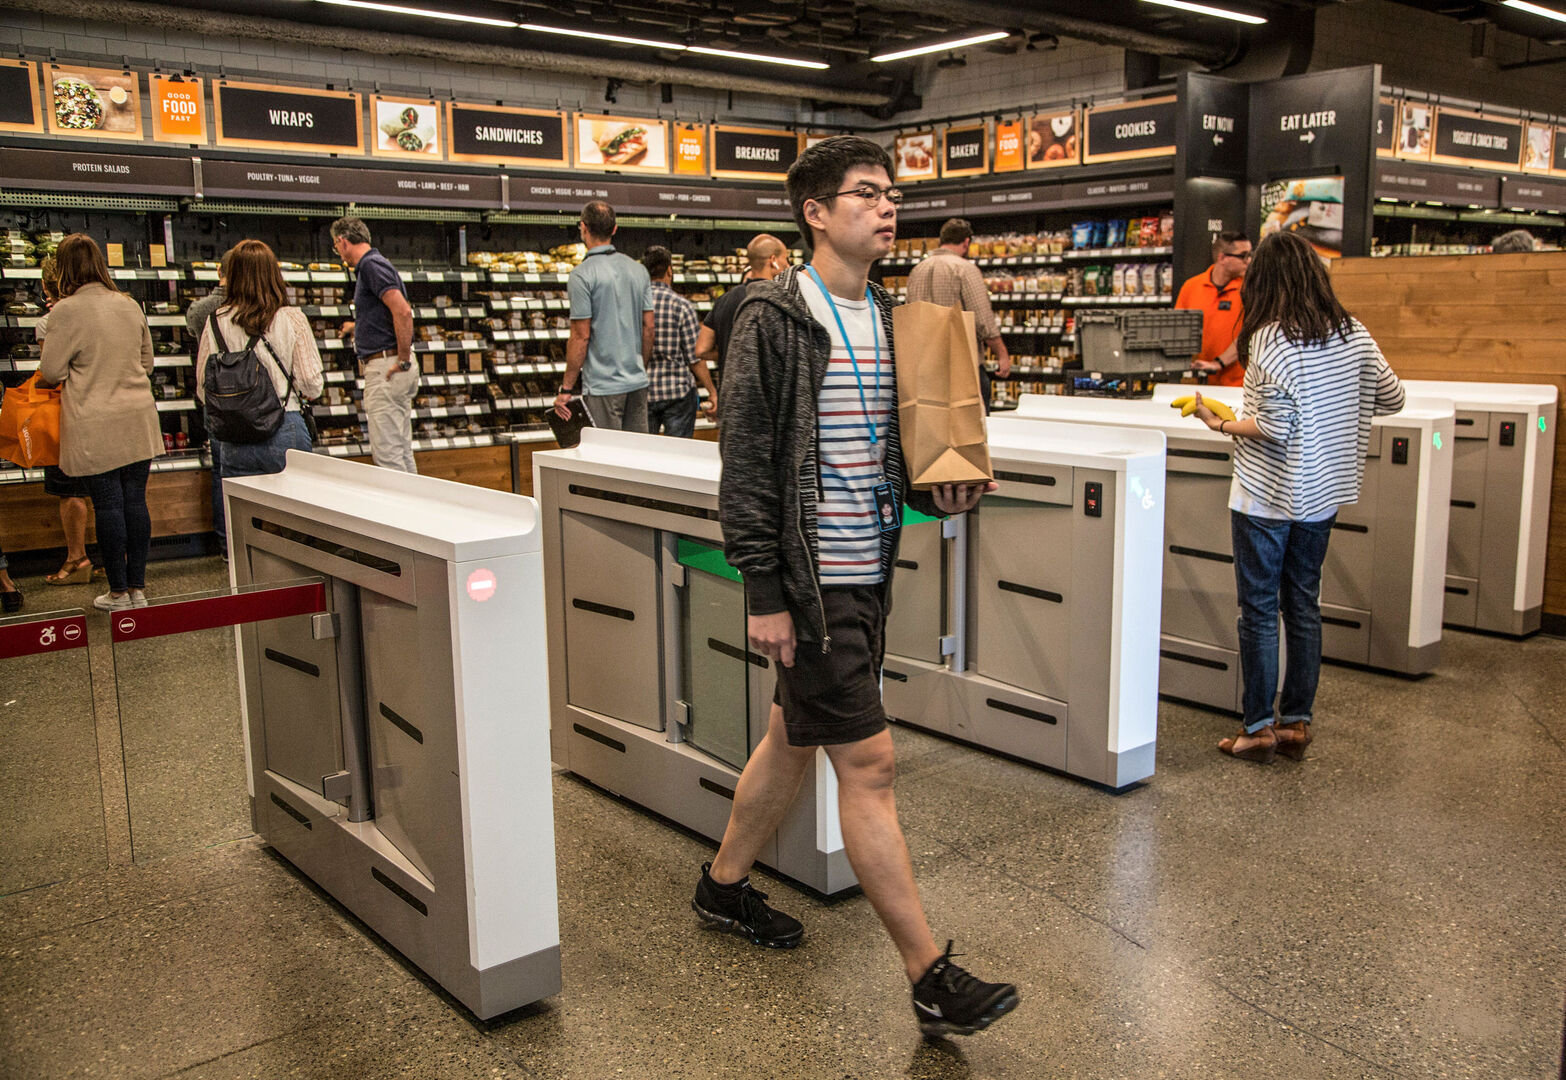 Supermercados  Go: ¿cuándo abren en España?